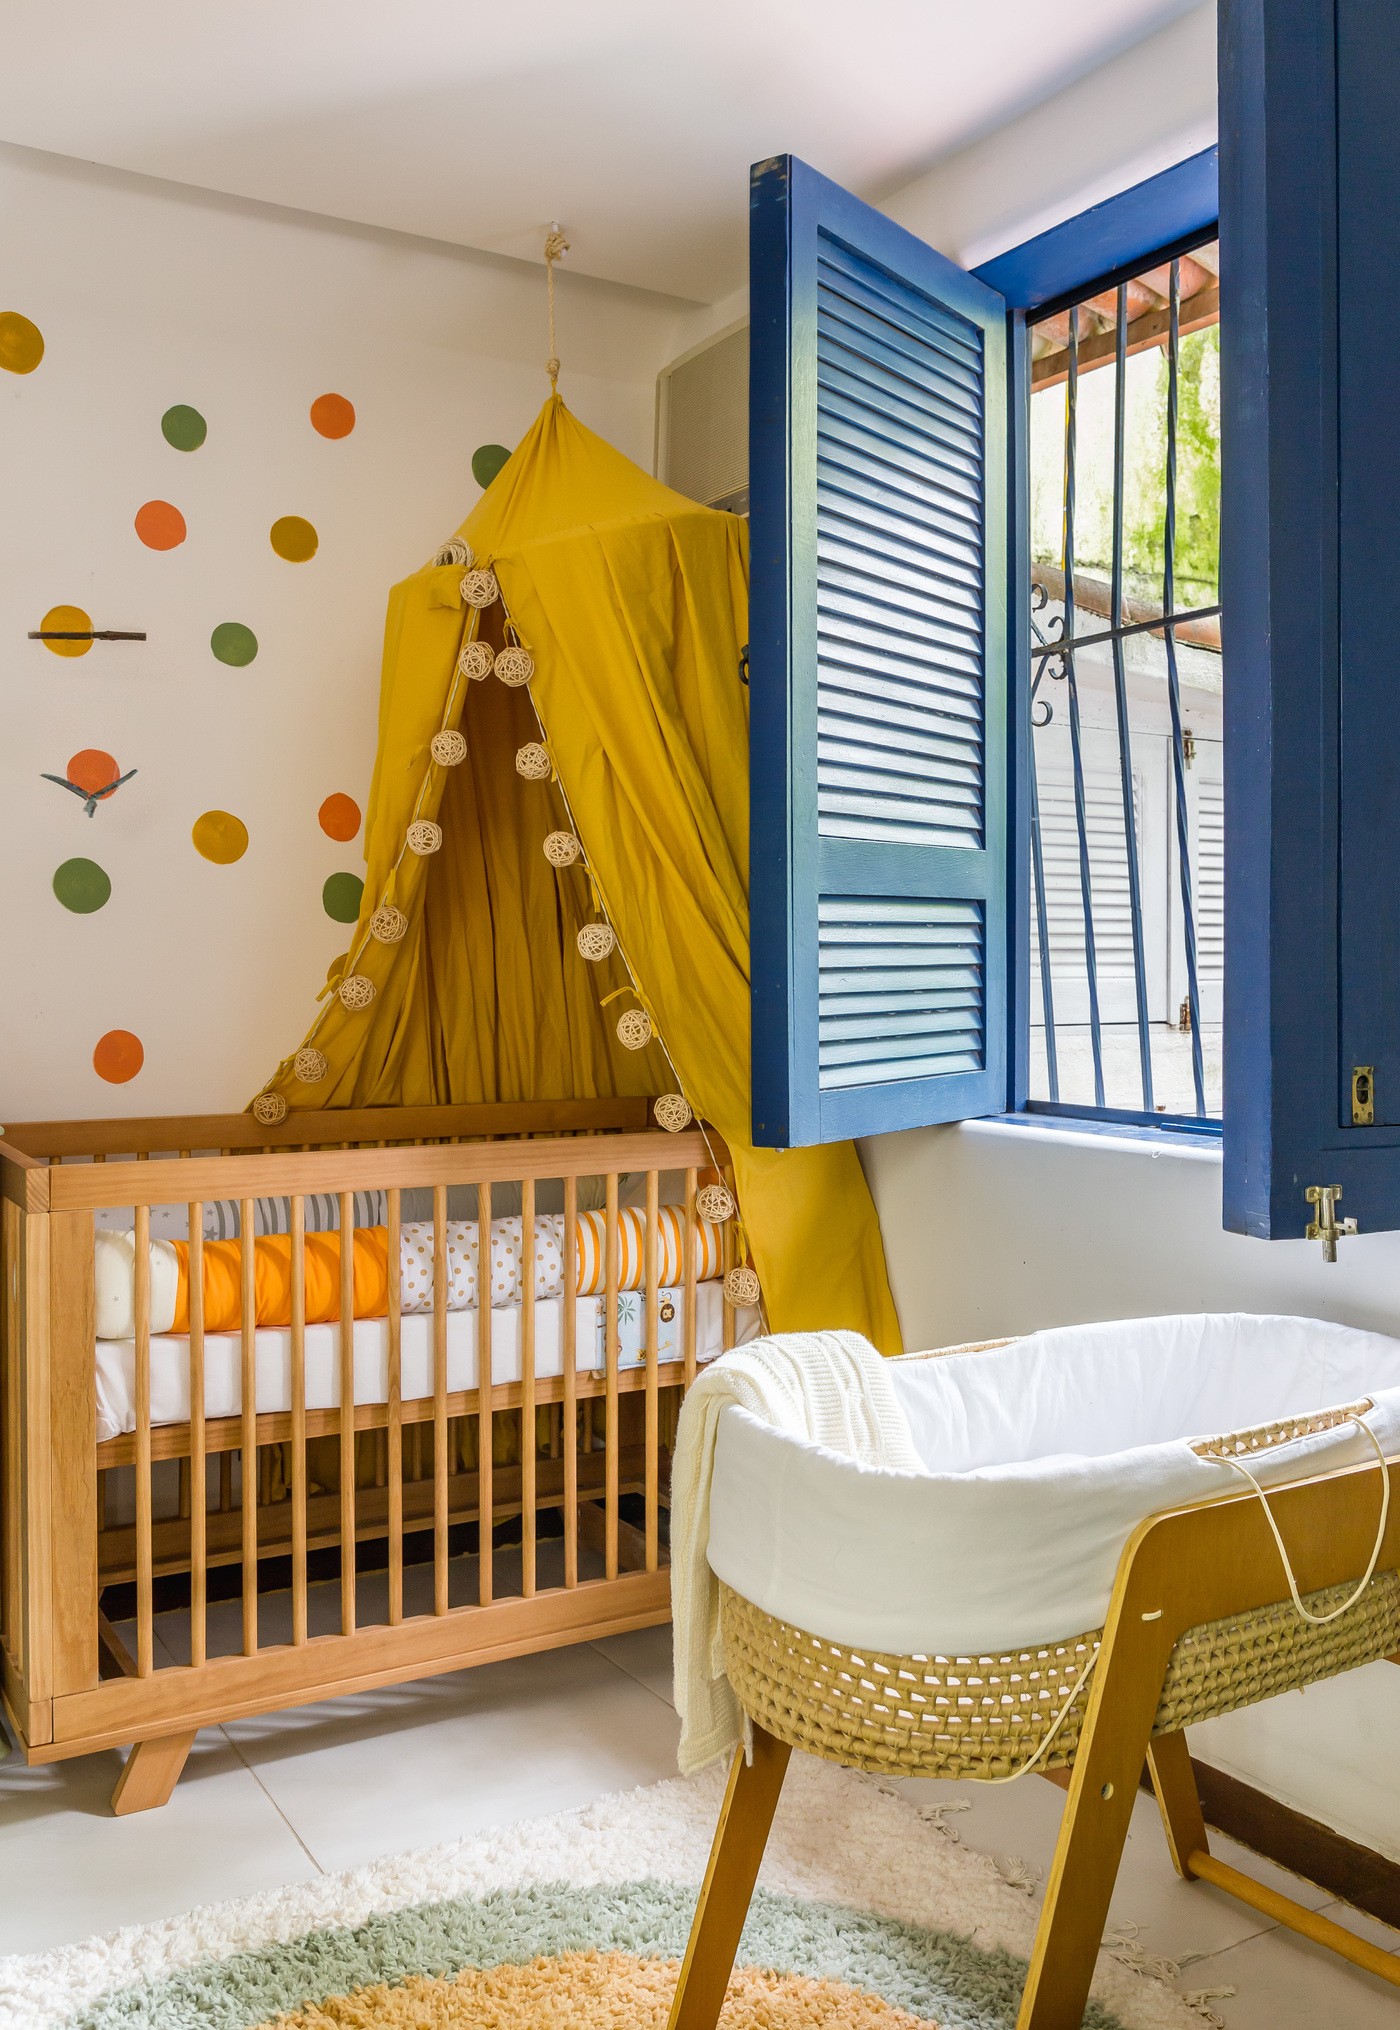 Décor do dia: parede de bolinhas e cabana são destaques neste quarto de bebê (Foto: Luiza Schreier)